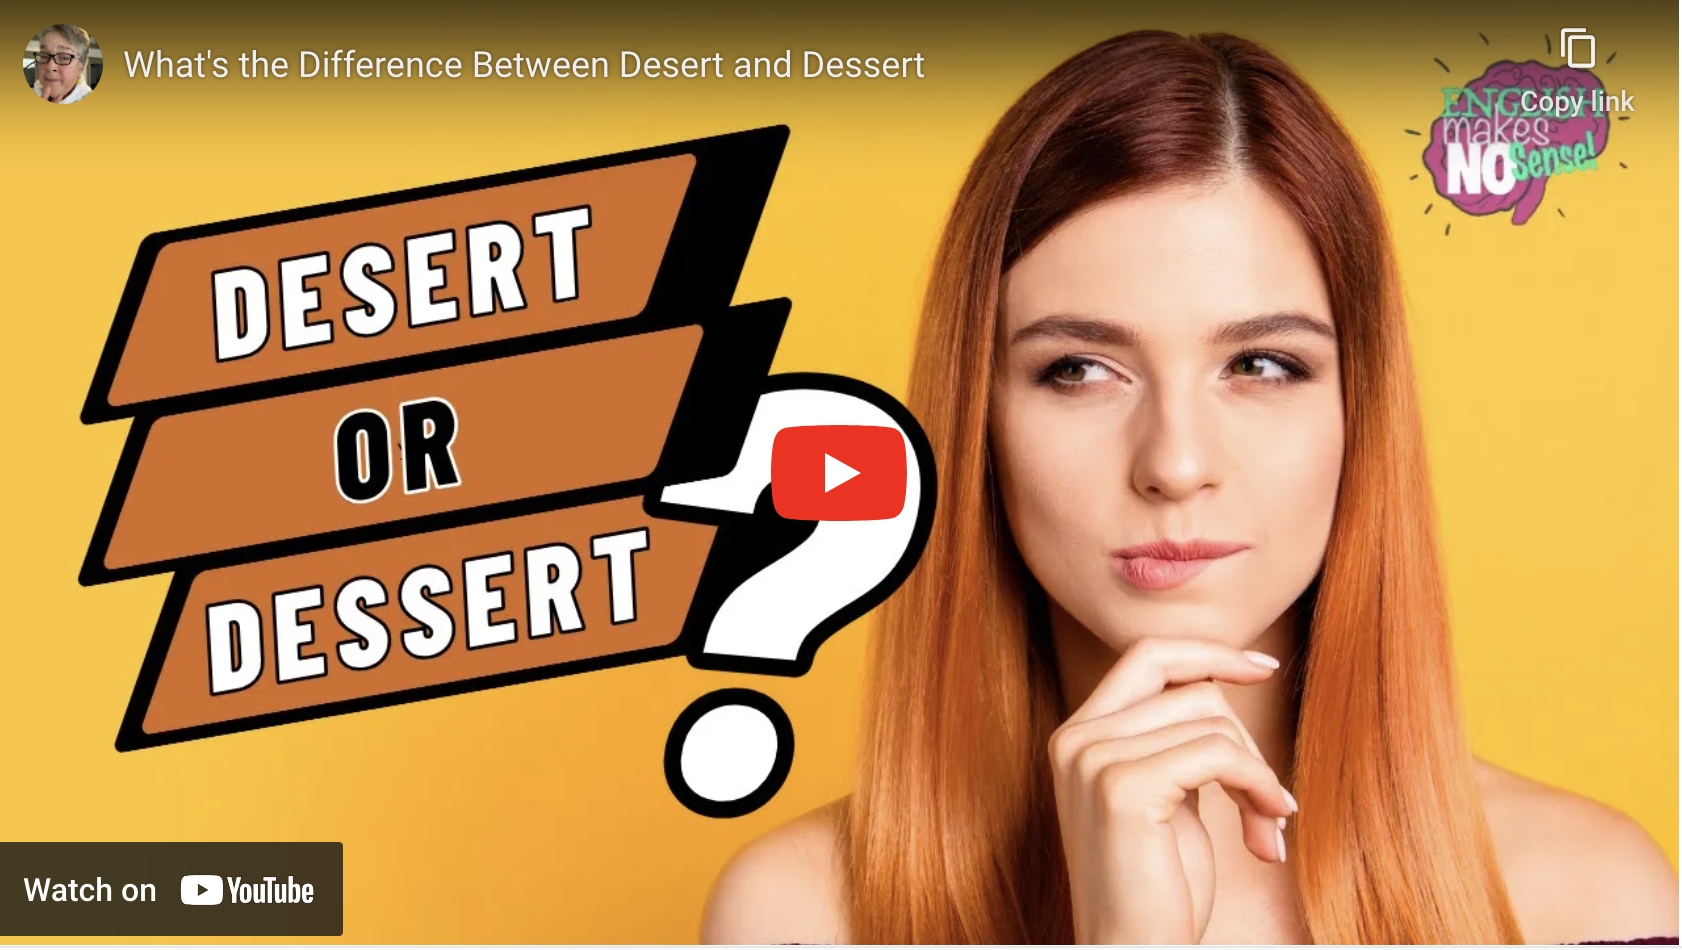 Desert or dessert